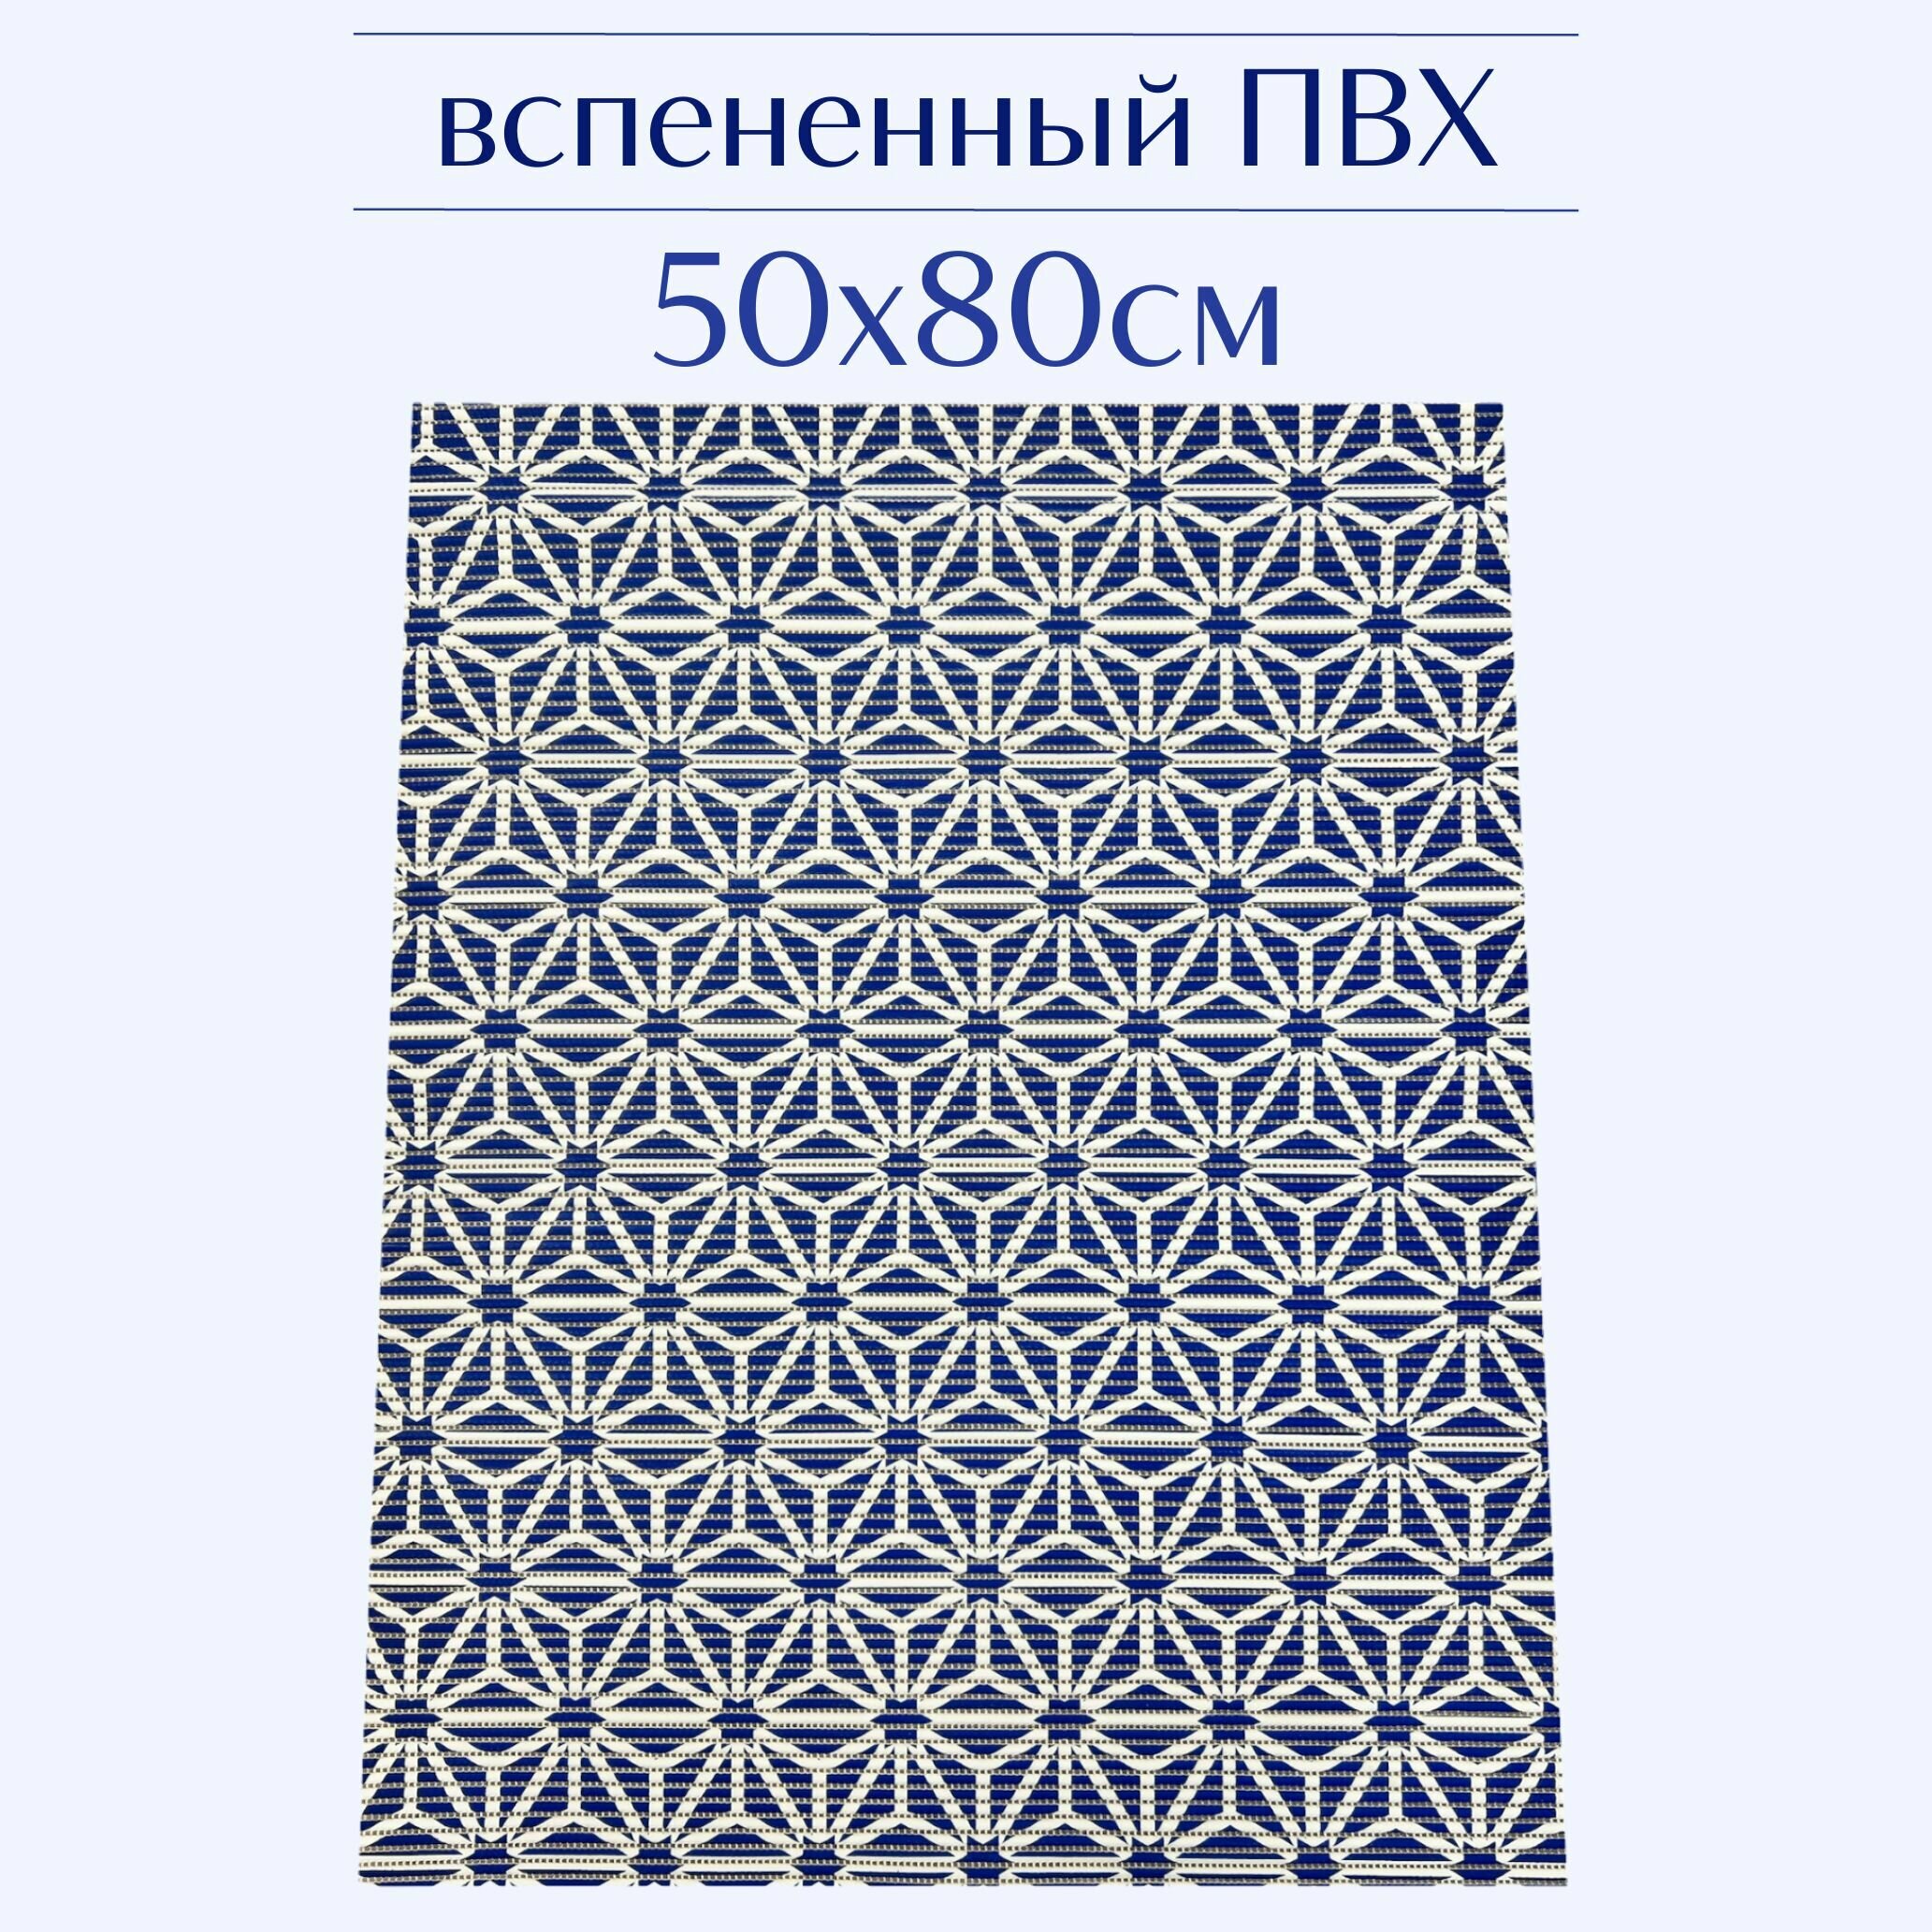 Напольный коврик для ванной из вспененного ПВХ 50x80 см синий/белый с рисунком